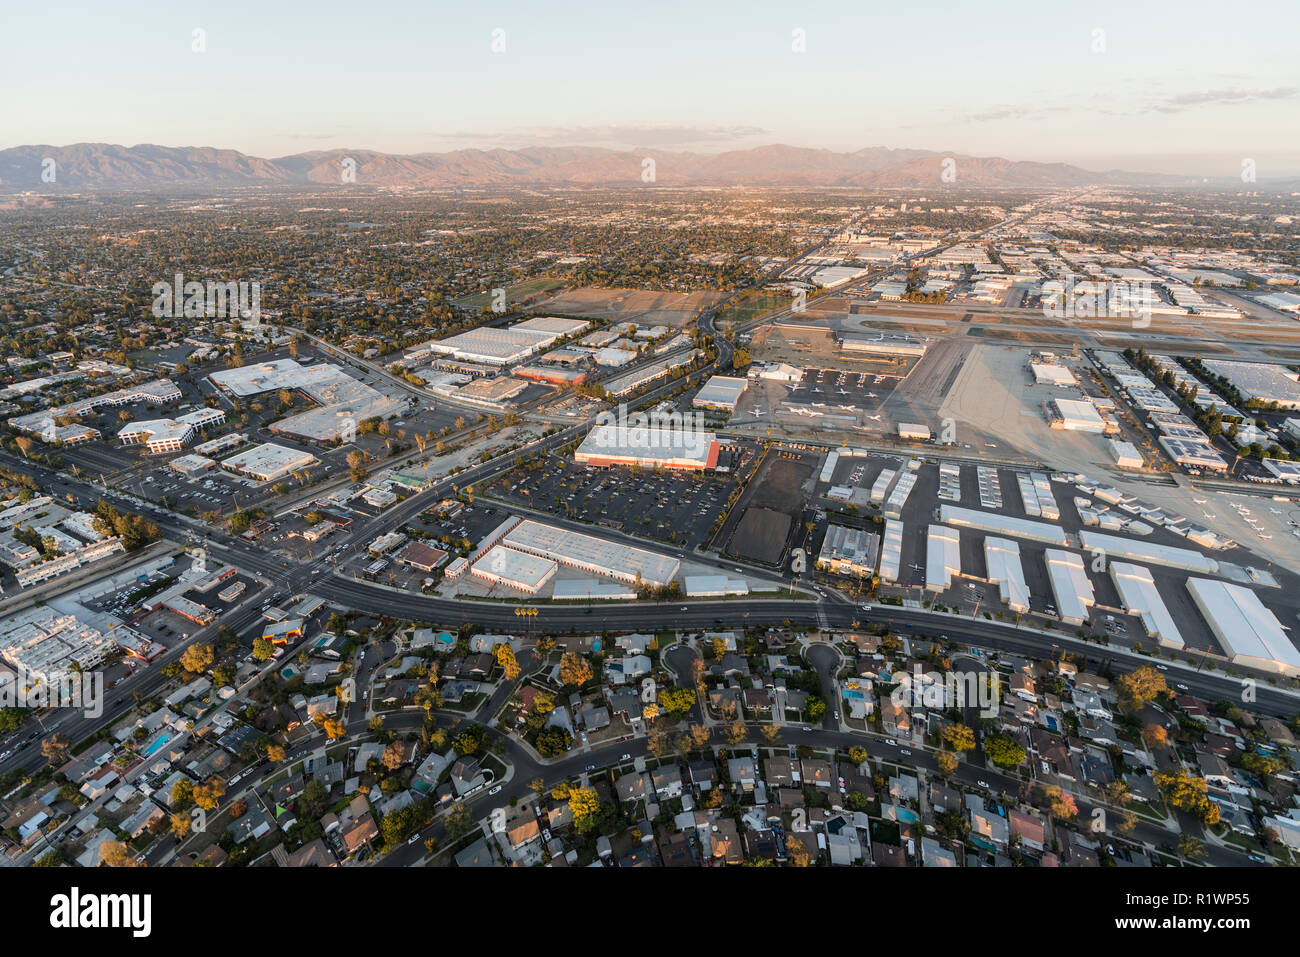 Nel tardo pomeriggio vista aerea di case, edifici industriali, asfalto e pista di Van Nuys airport nella valle di San Fernando. Foto Stock